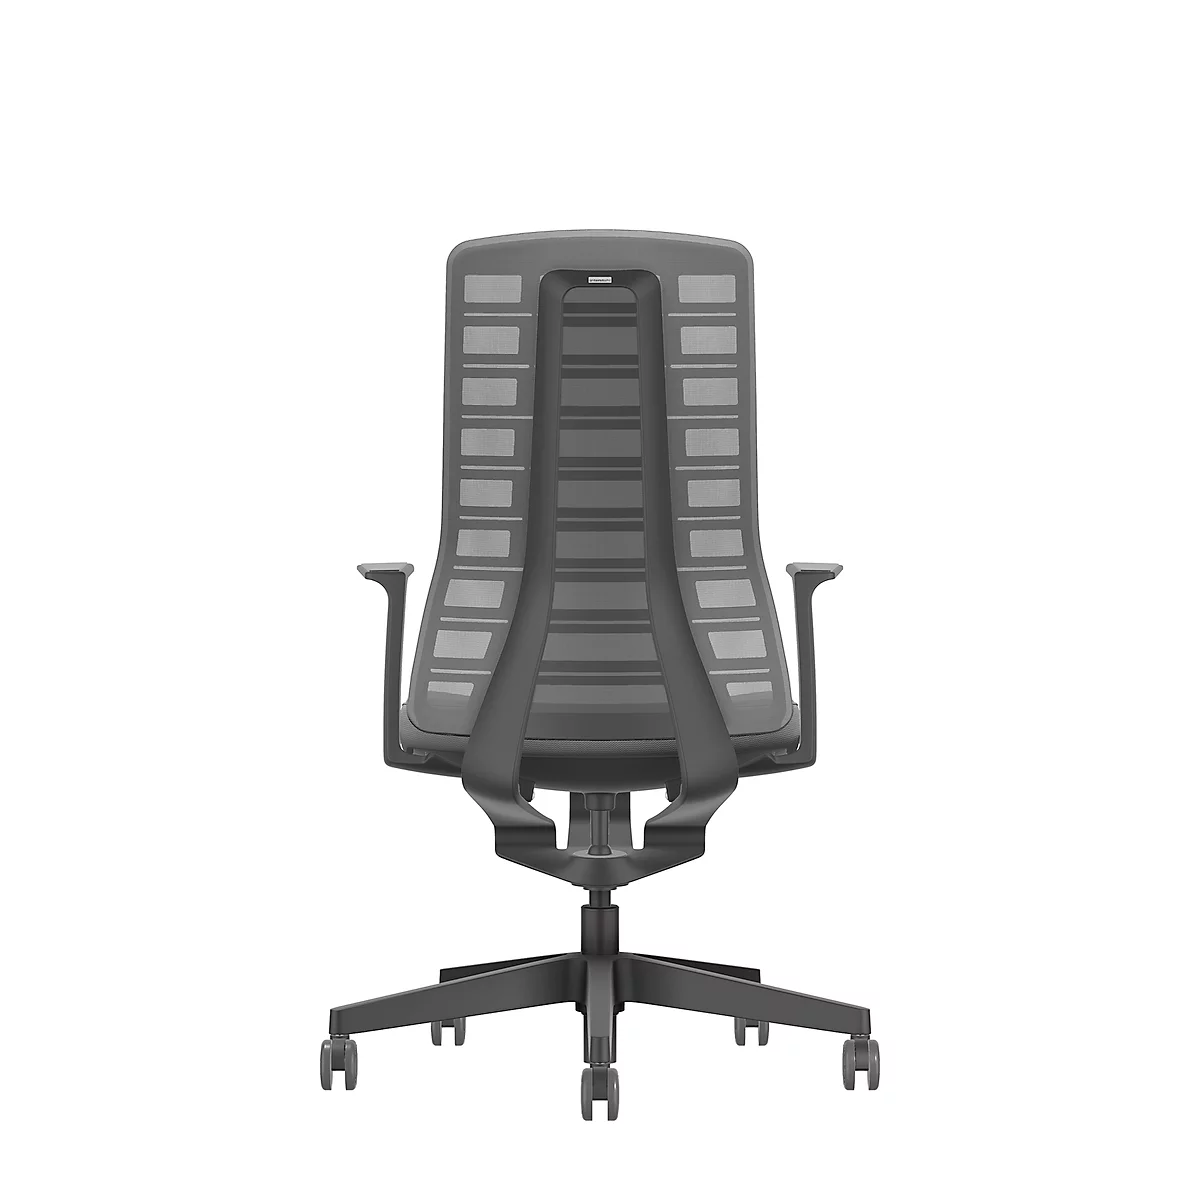 Interstuhl bureaustoel PUREis3, vaste armleuningen, 3D auto-synchroonmechanisme, kuipzitting, gazen rugleuning, ijzergrijs/zwart